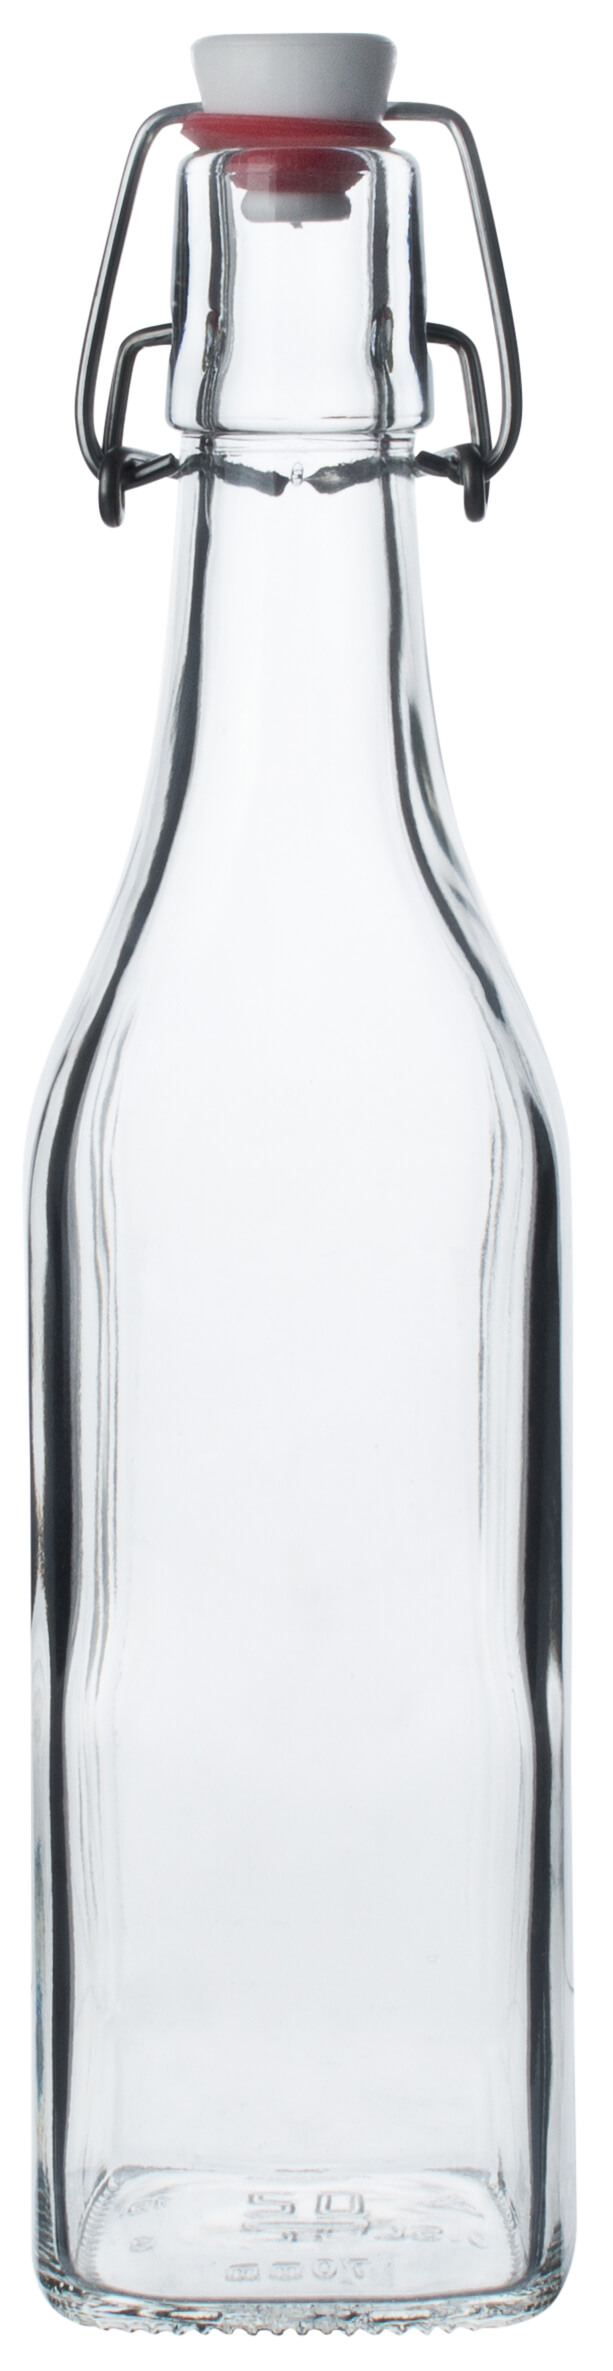 Bügelverschlussflasche eckig - 500ml